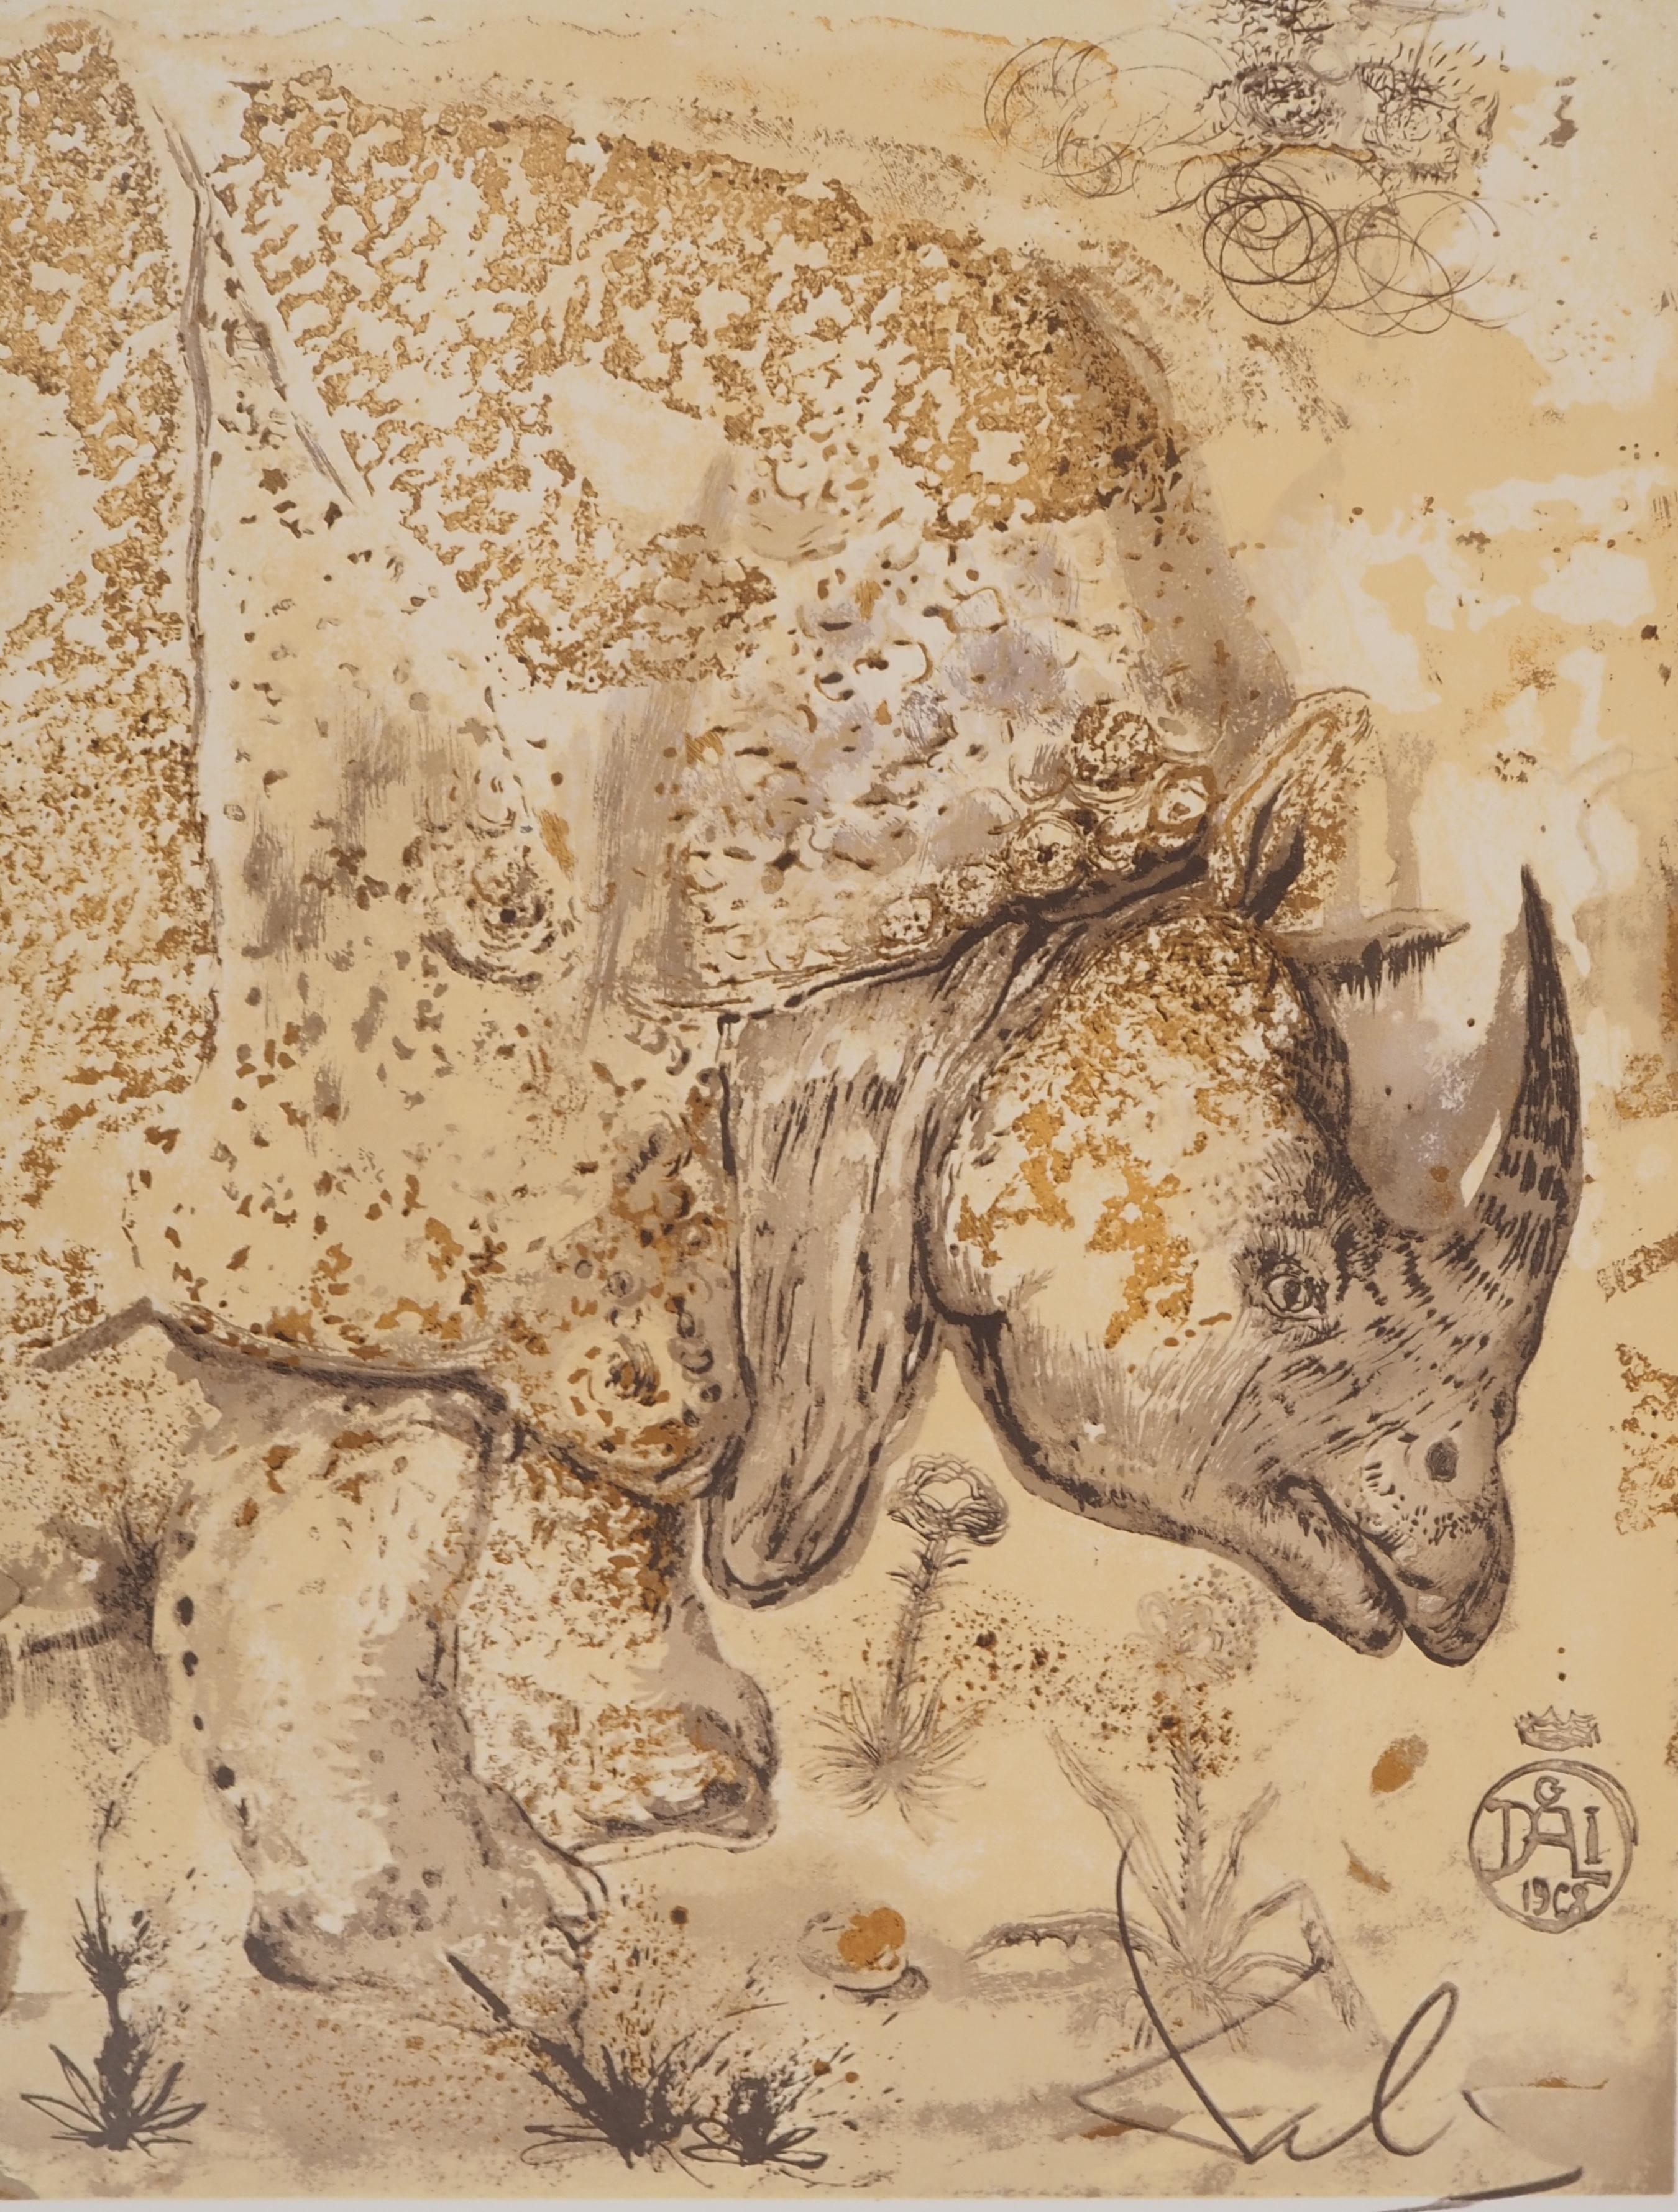 Rhinoceros, Hommage à Albrecht DURER - Affiche lithographique originale (Gaspar n° 1503 - Surréalisme Print par Salvador Dalí